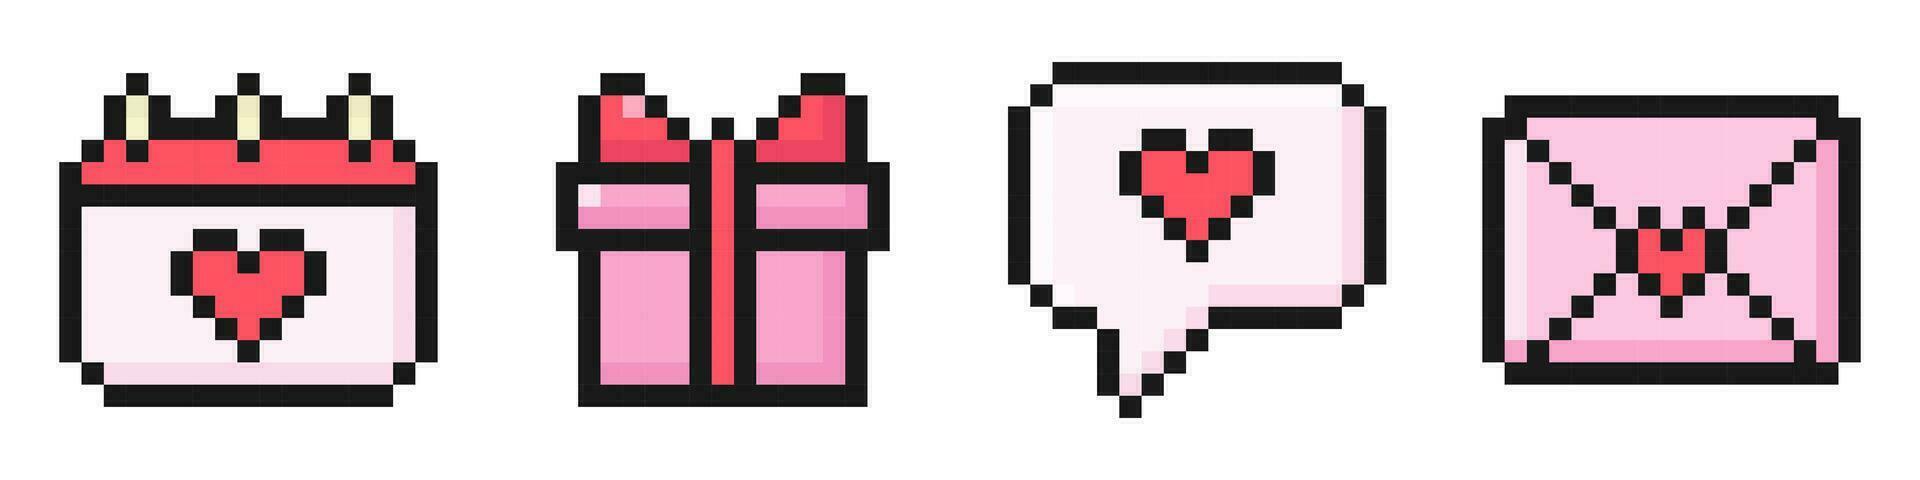 San Valentín día píxel conjunto de iconos, antiguo, 8 poco, años 80, 90s arcada juego estilo, íconos para juego o móvil aplicación, diálogo, carta, calendario, regalo, vector ilustración